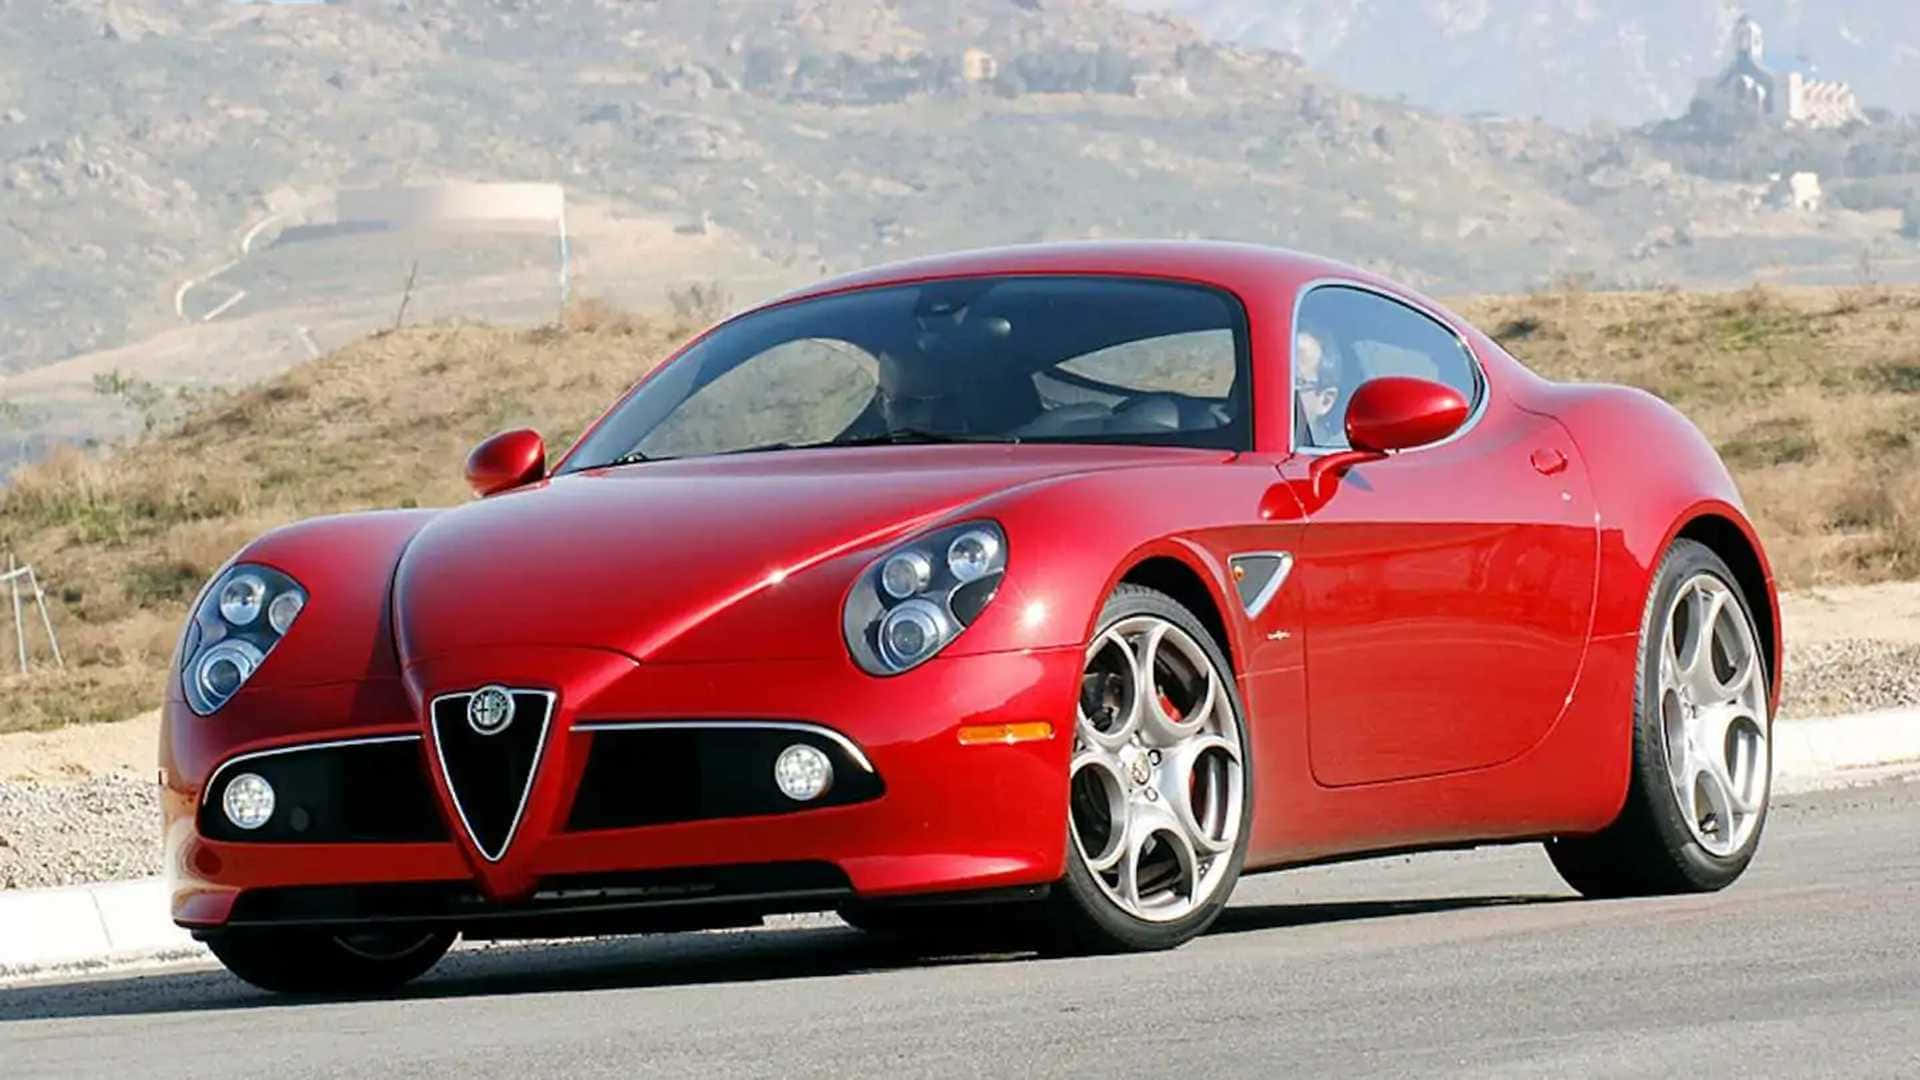 Alfa Romeo 8c Competizione - A Masterpiece of Italian Design and Performance Wallpaper